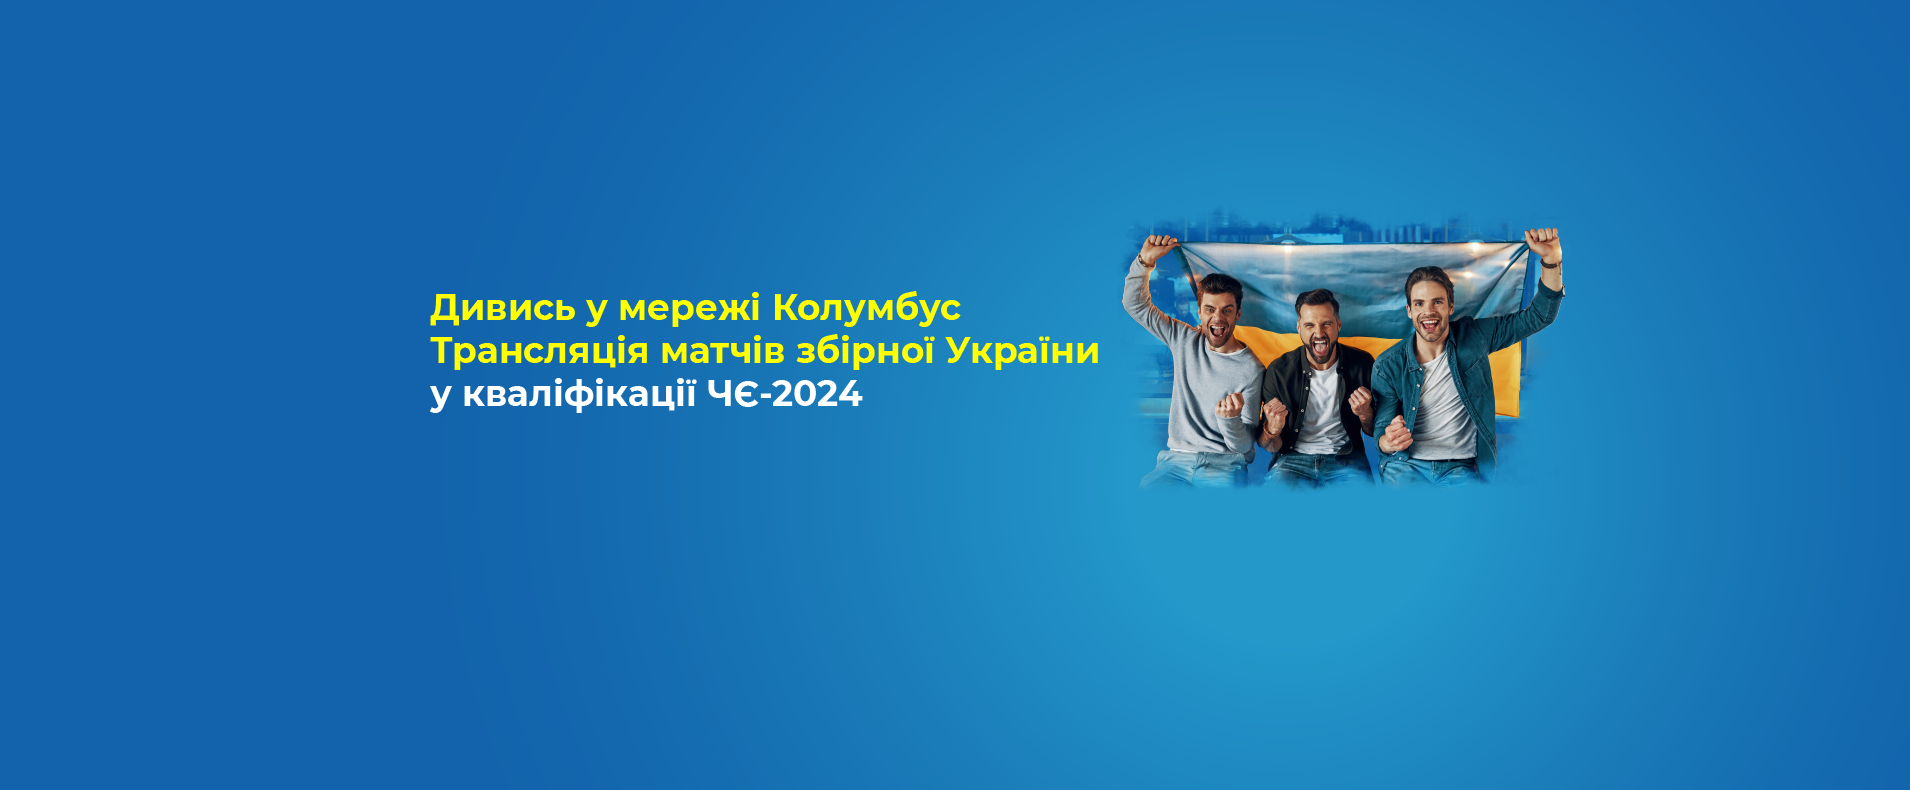 Трансляція матчів збірної України у кваліфікації ЧЄ-2024